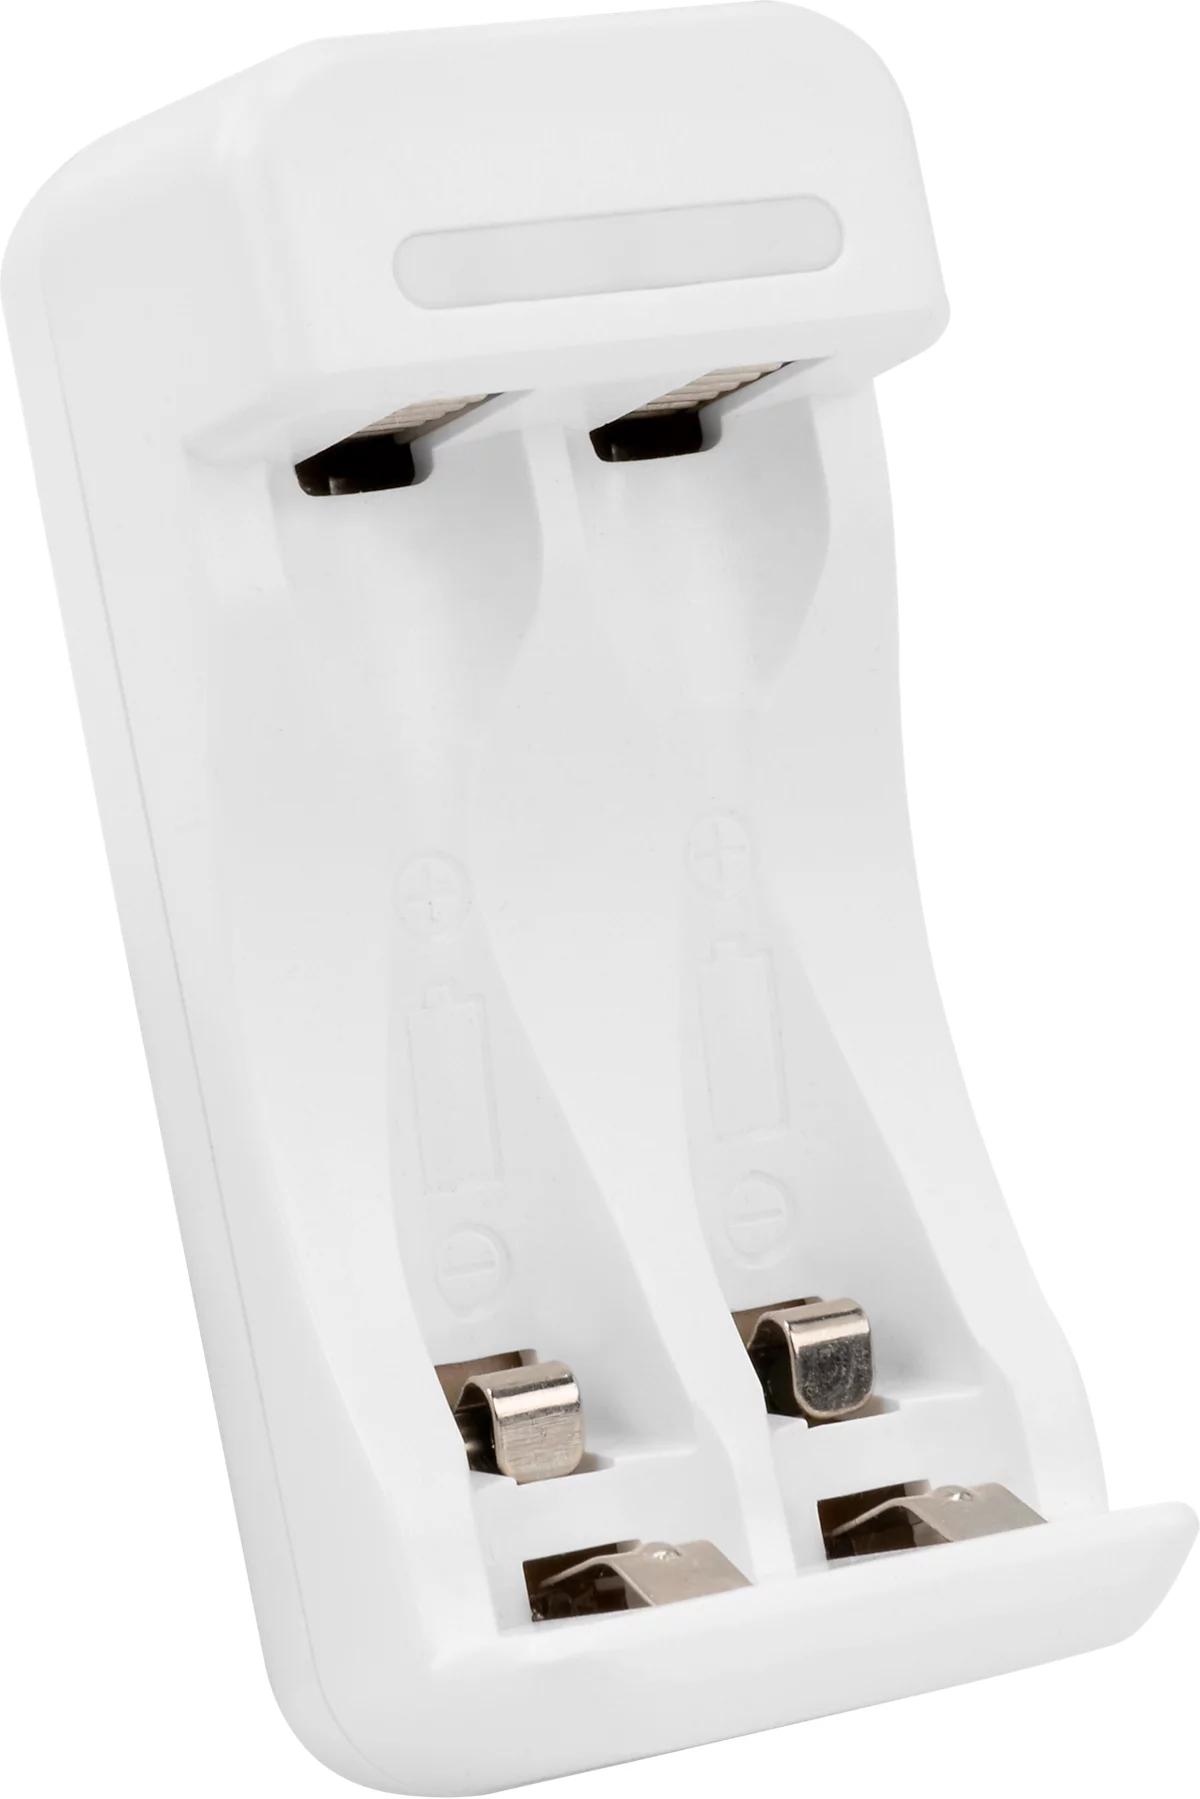 Basics Pack chargeur de piles USB avec piles rechargeables